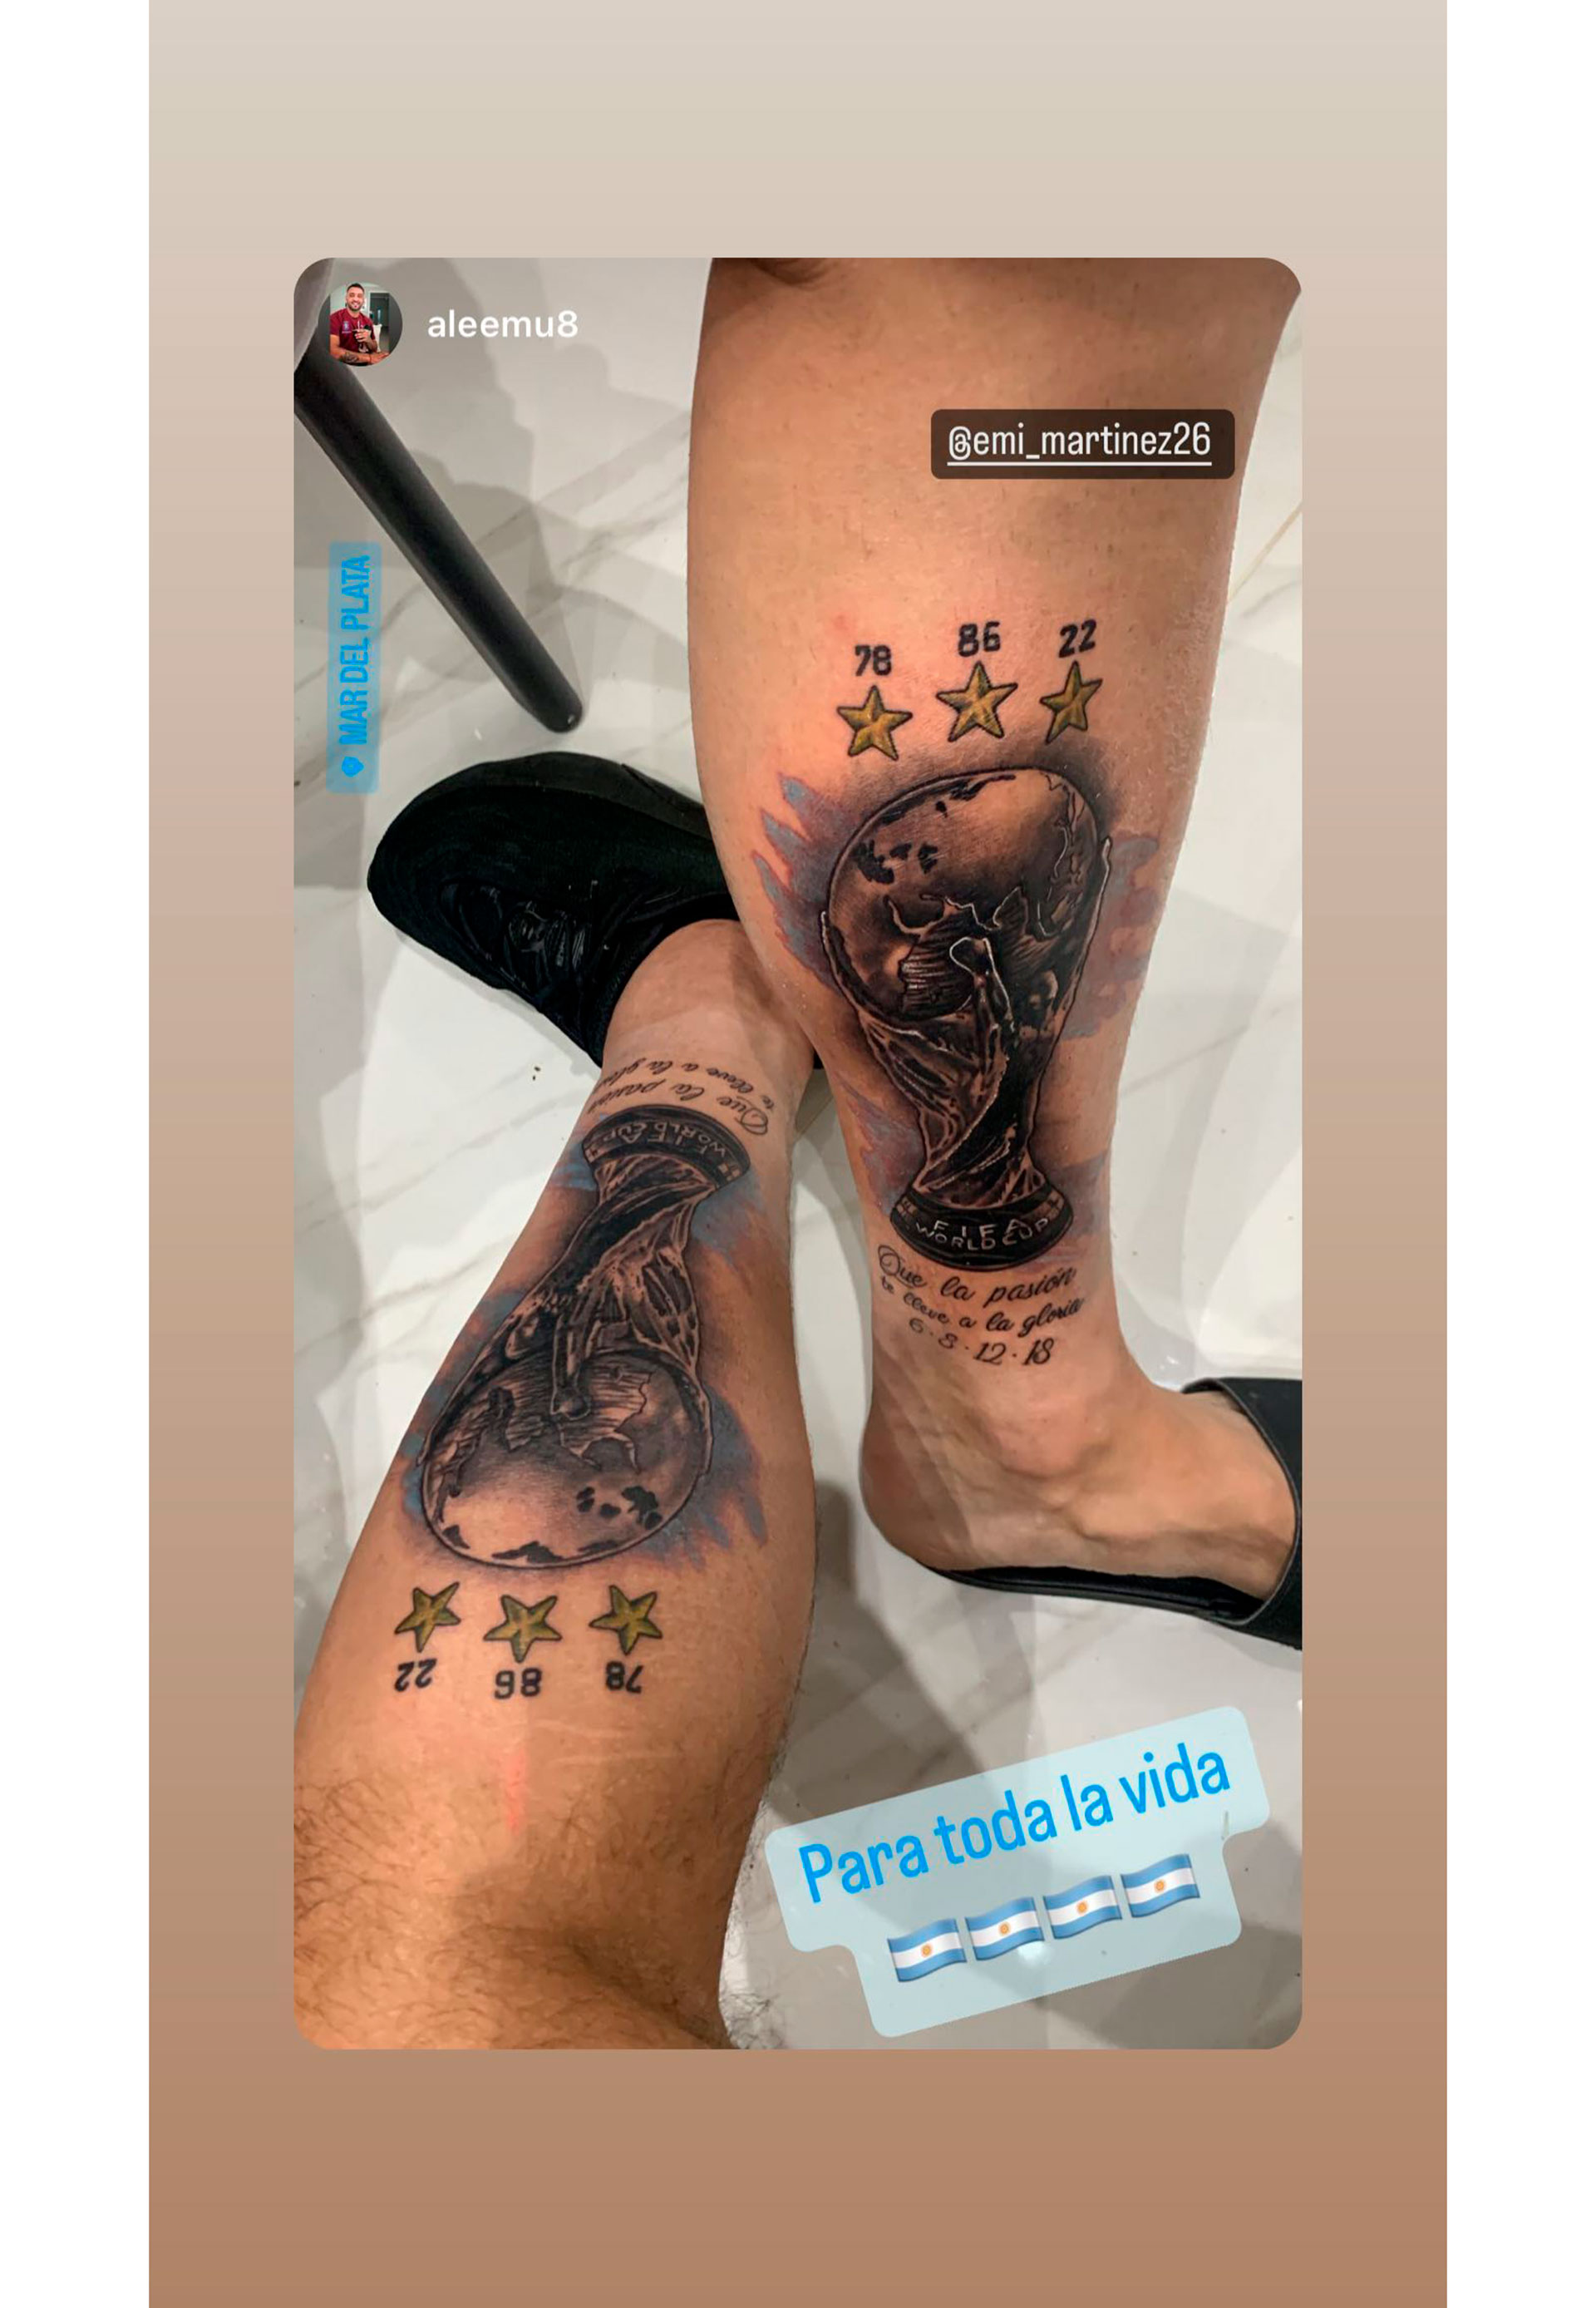 La imagen de los dos tatuajes, el de Dibu Martínez y su amigo (instagram)